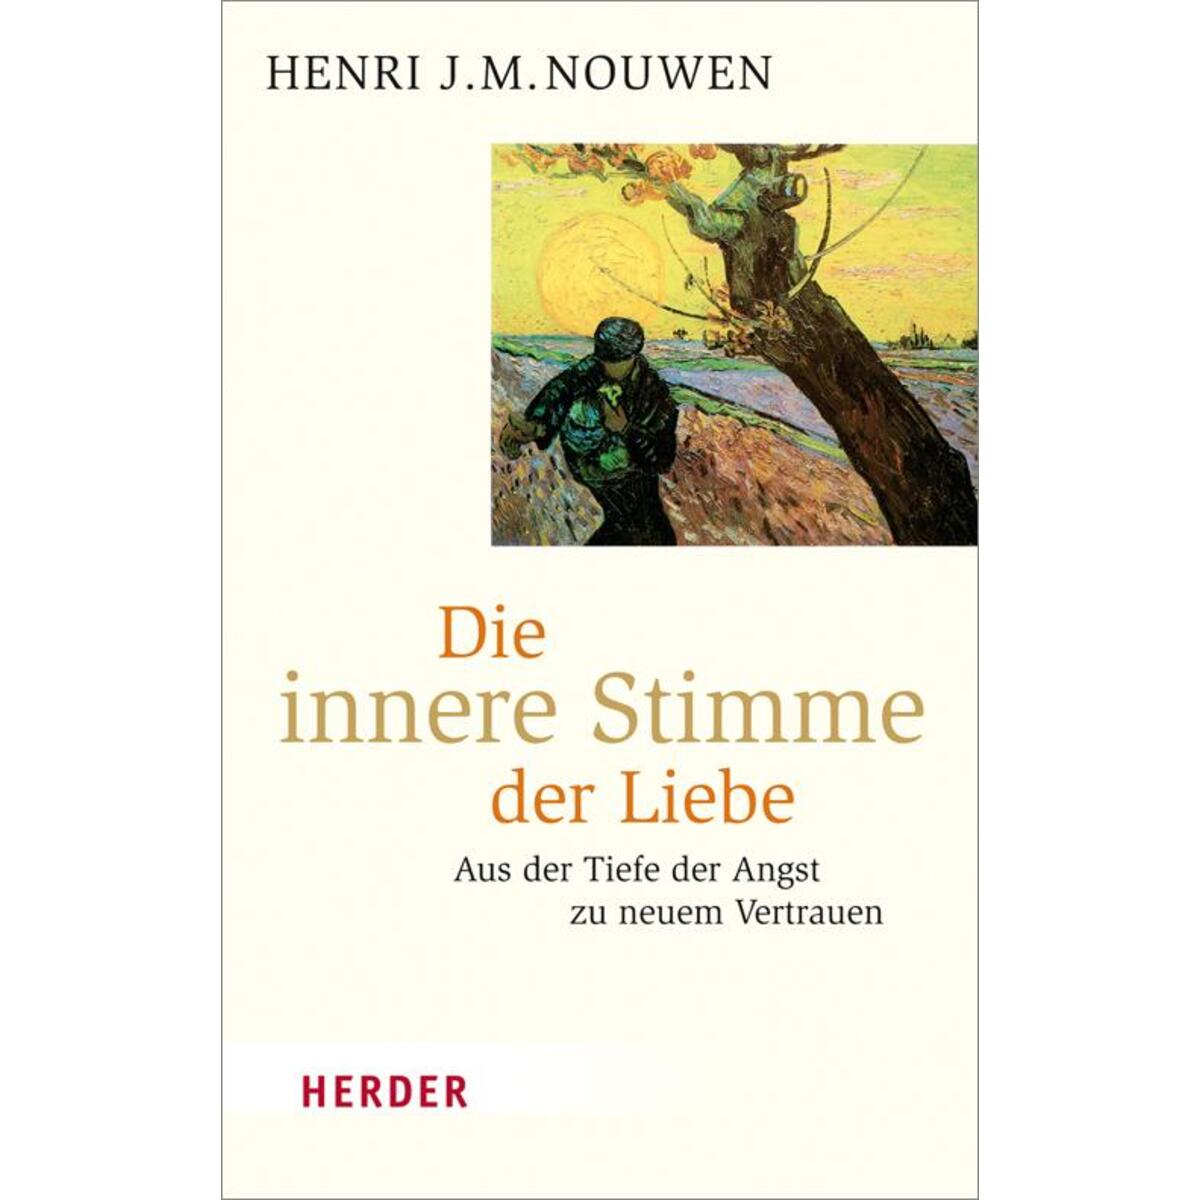 Die innere Stimme der Liebe von Herder Verlag GmbH